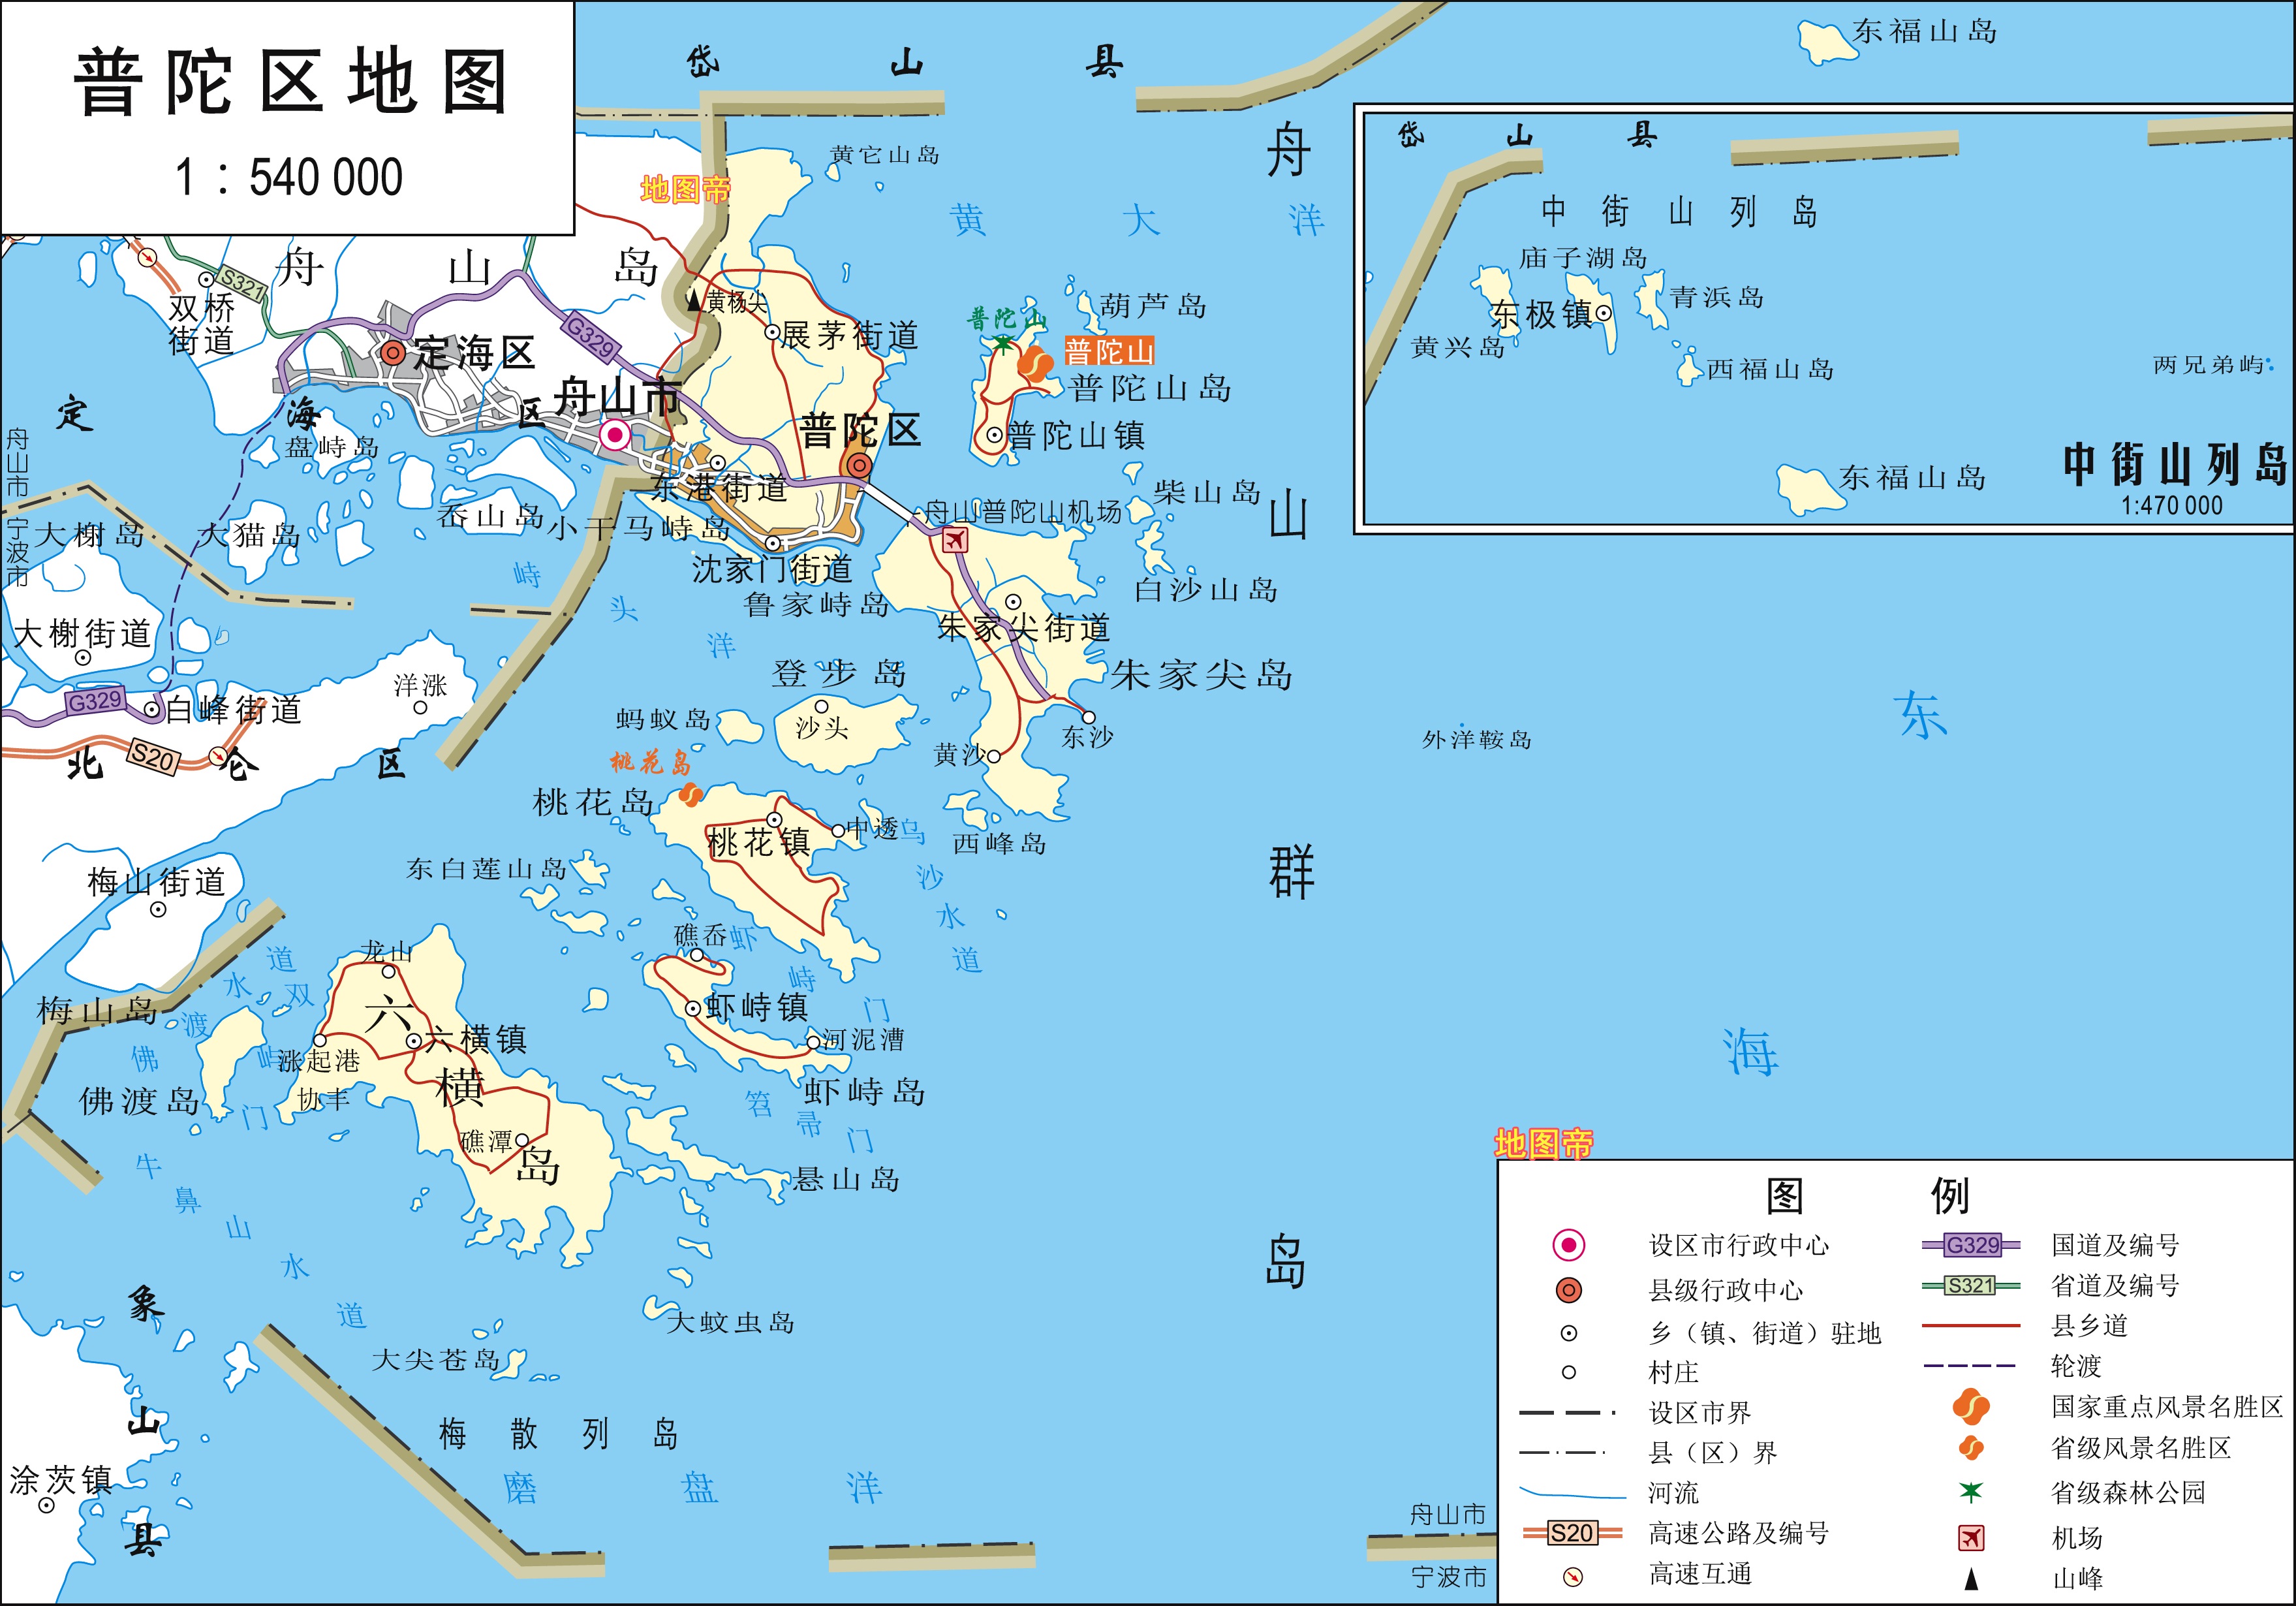 舟山市高清地图,浙江陆地面积最小地级市